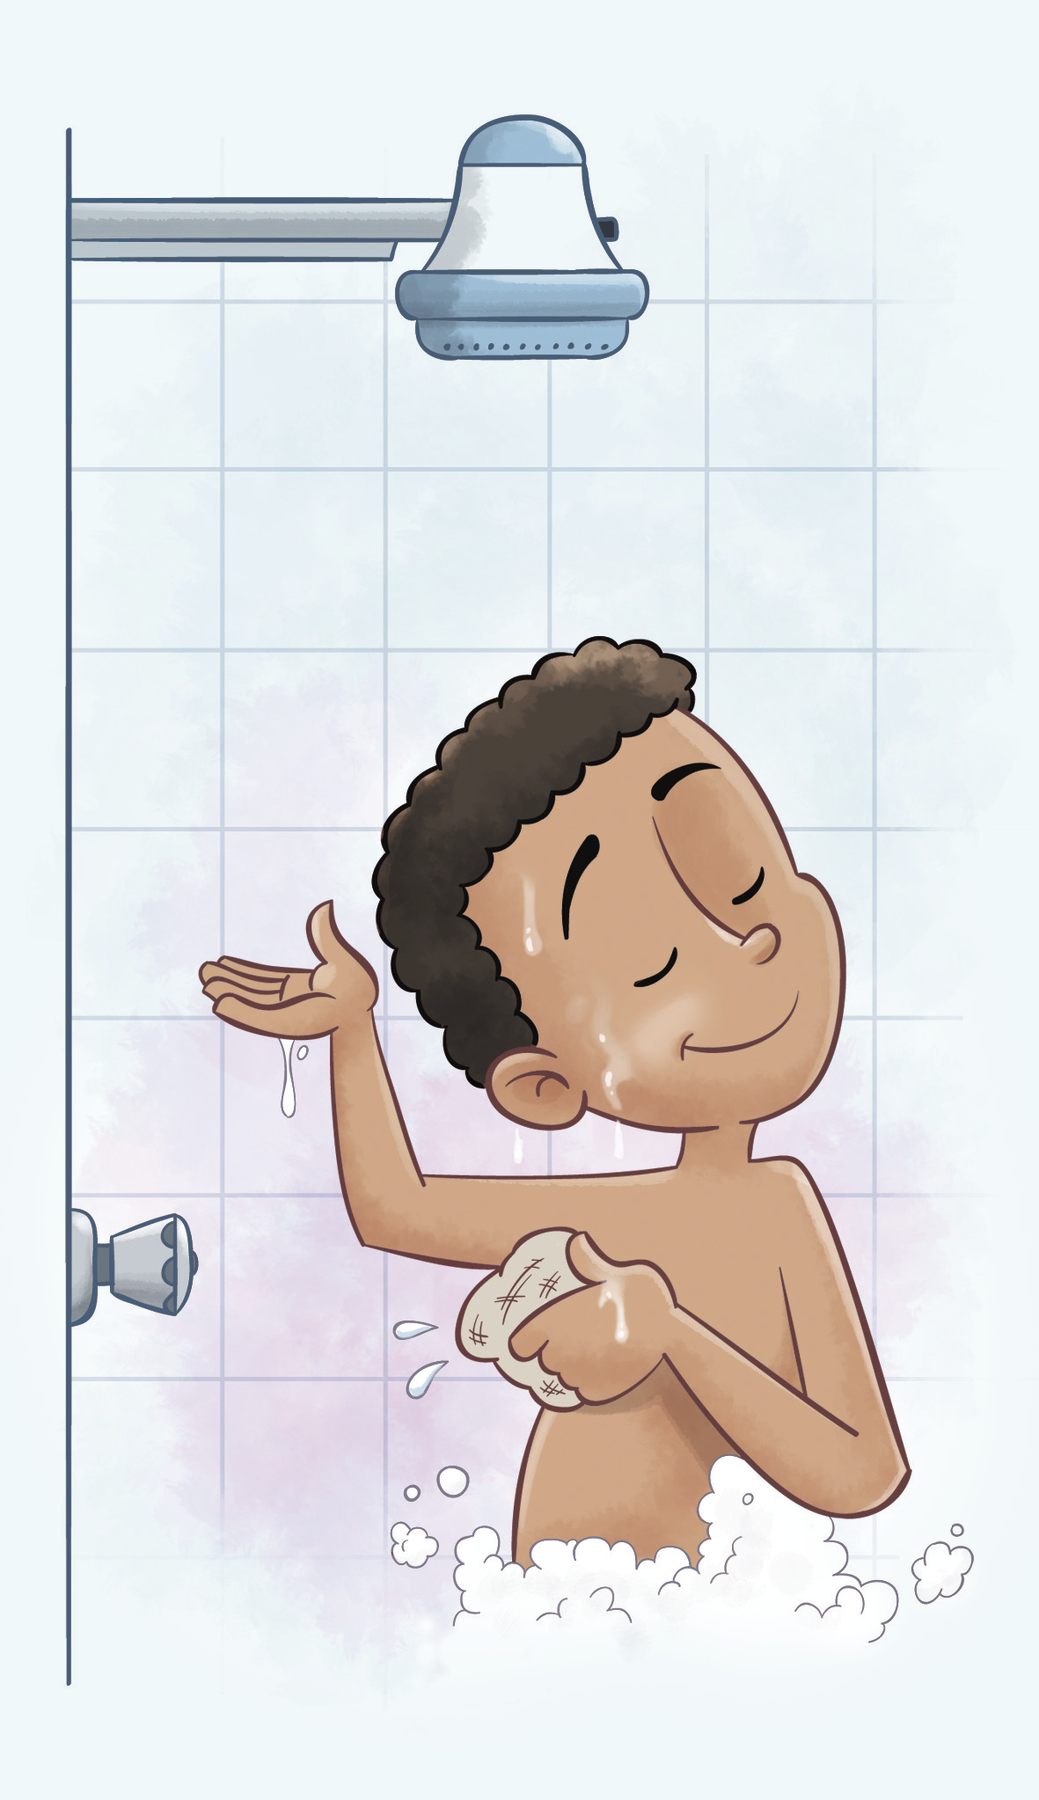 Ilustração. Menino negro de cabelo castanho enrolado está se ensaboando embaixo do chuveiro fechado.